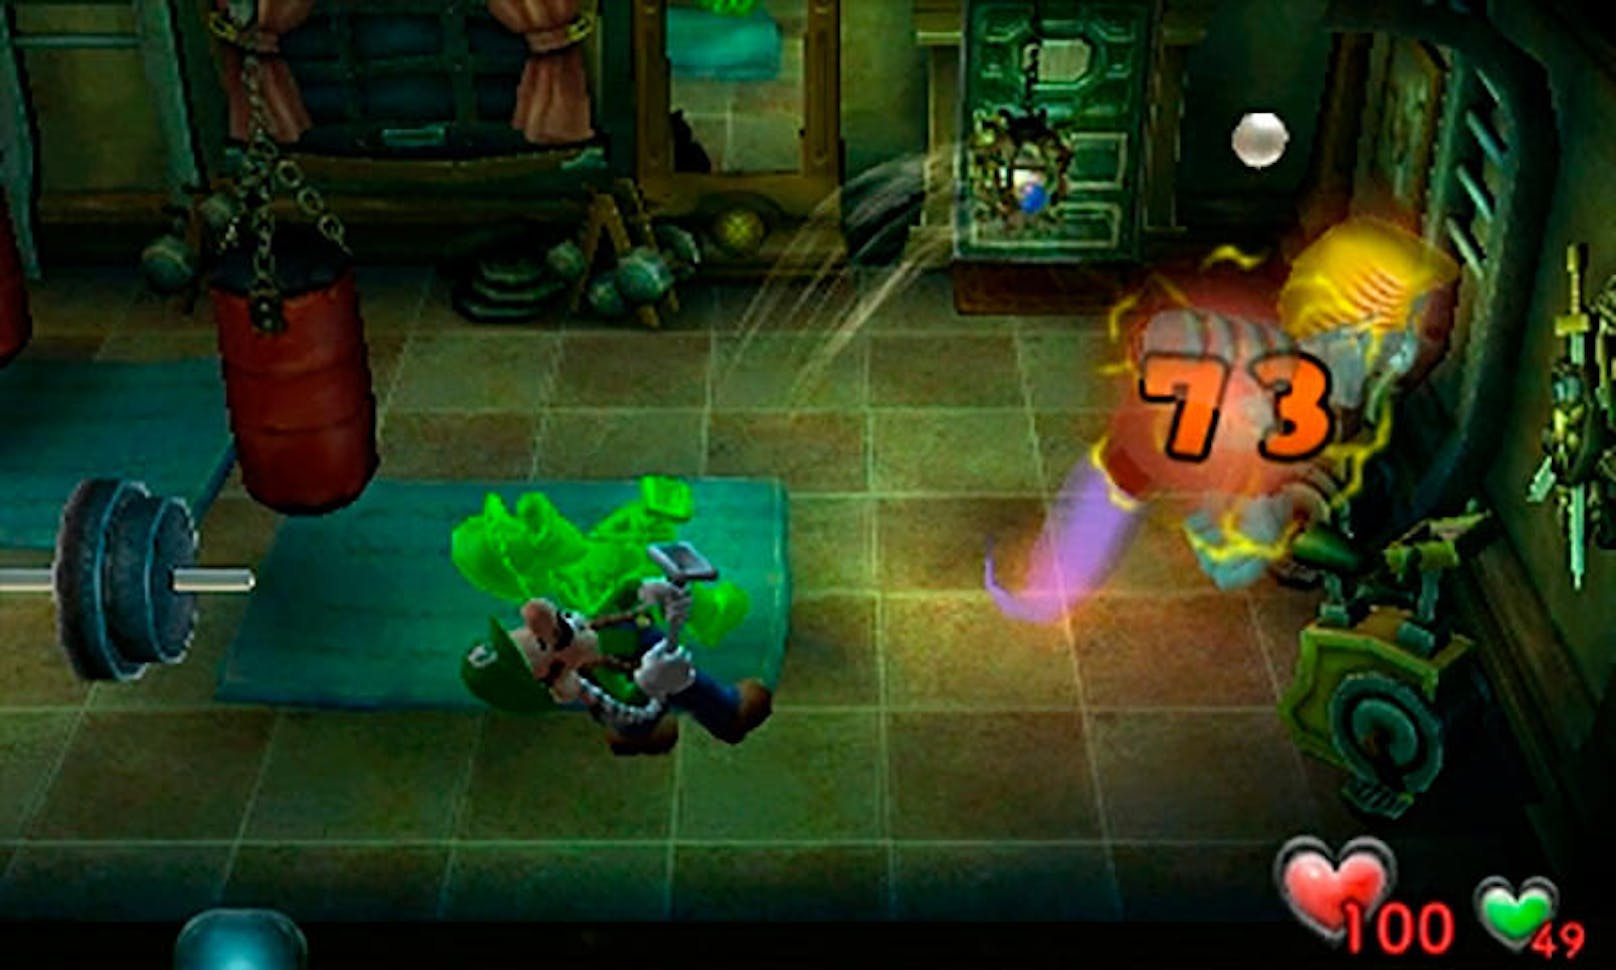 Zwischendurch kann man immer wieder in besagtes Labor reisen, um von dort aus den Trainingsraum zu betreten oder den neuen Koop-Modus zu starten. In diesem übernimmt der zweite Spieler eine grüne Glibber-Version von Luigi. Wenn beide Geisterjäger das Spiel besitzen, kann die gesamte Story zusammen durchgespielt werden.